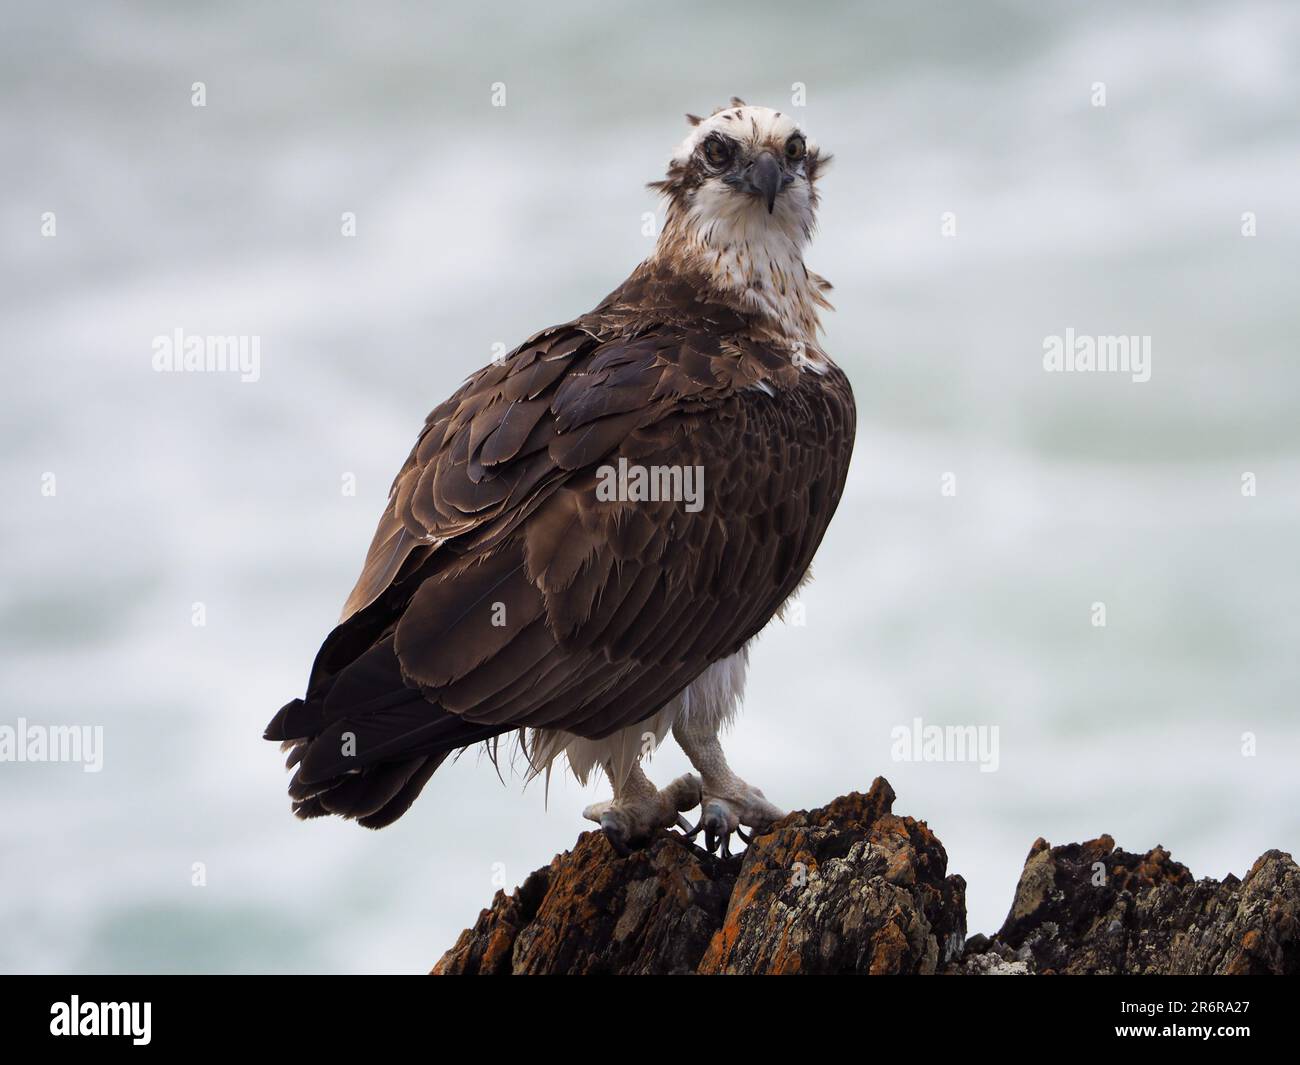 Bird of prey, a beautiful Eastern Osprey or Fish Hawk head turned